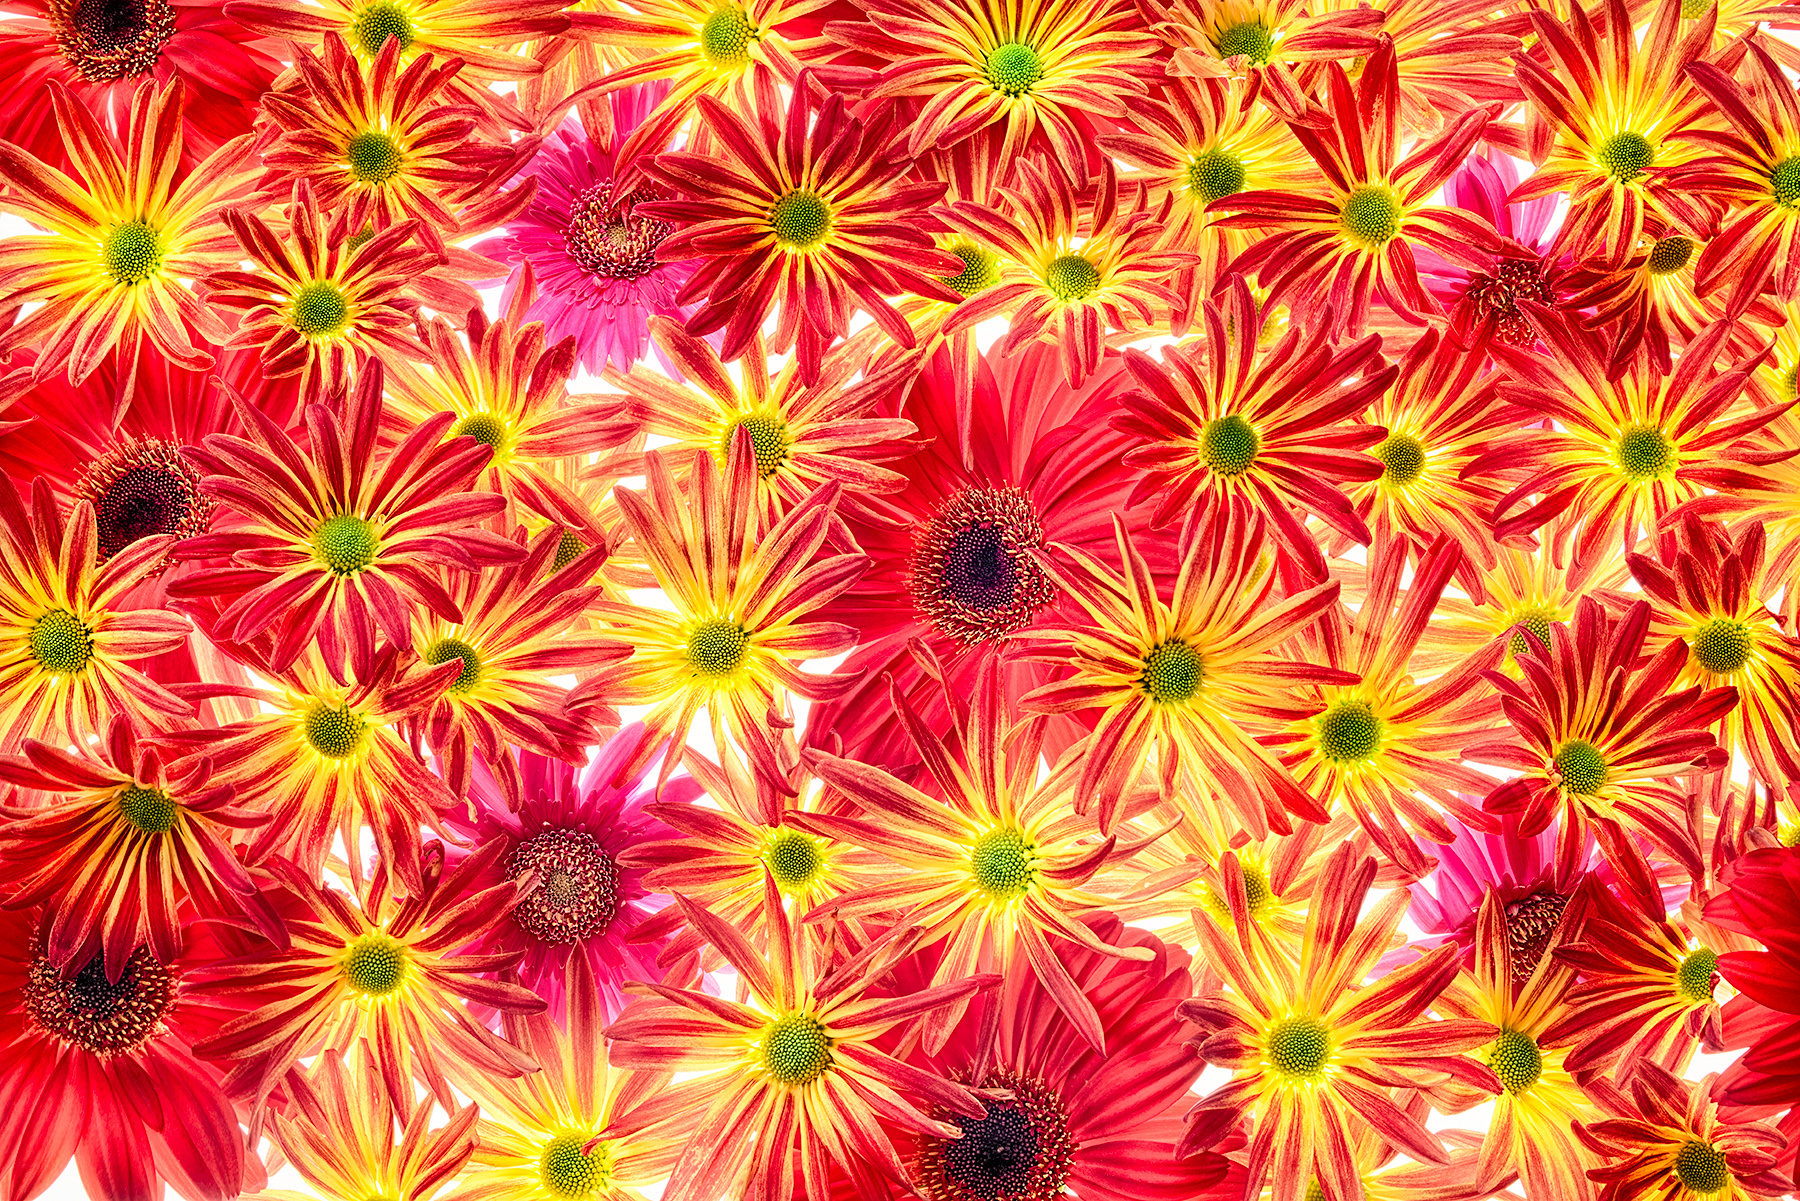 Chrysanthemums and Gerberas © Harold Davis